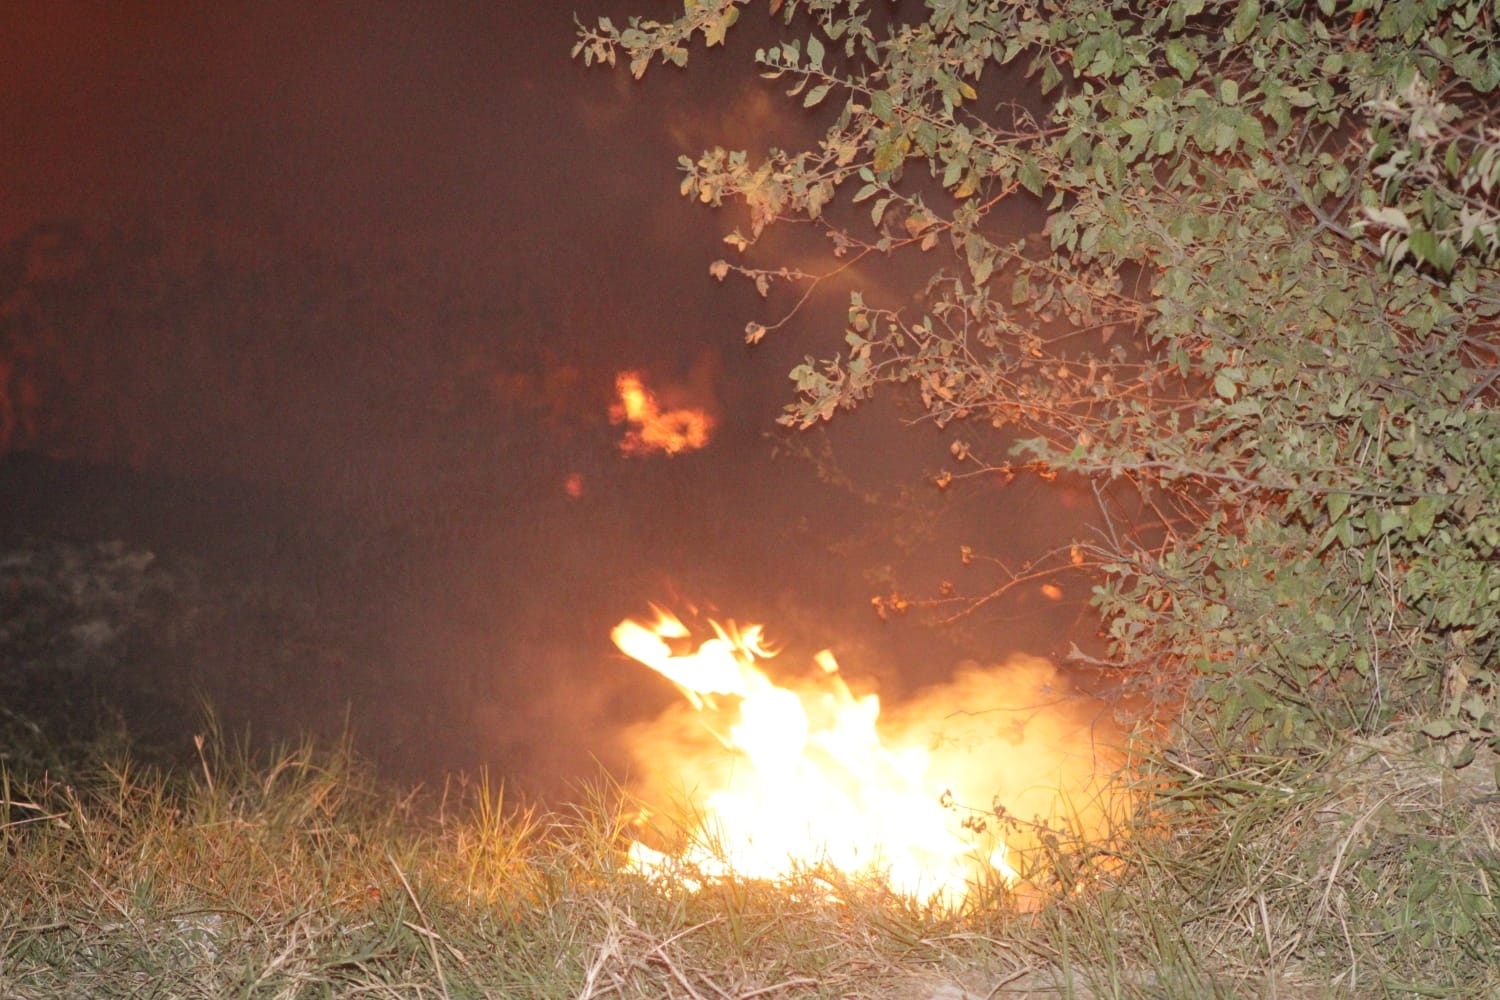 Colilla de cigarro causa incendio de un terreno en Progreso